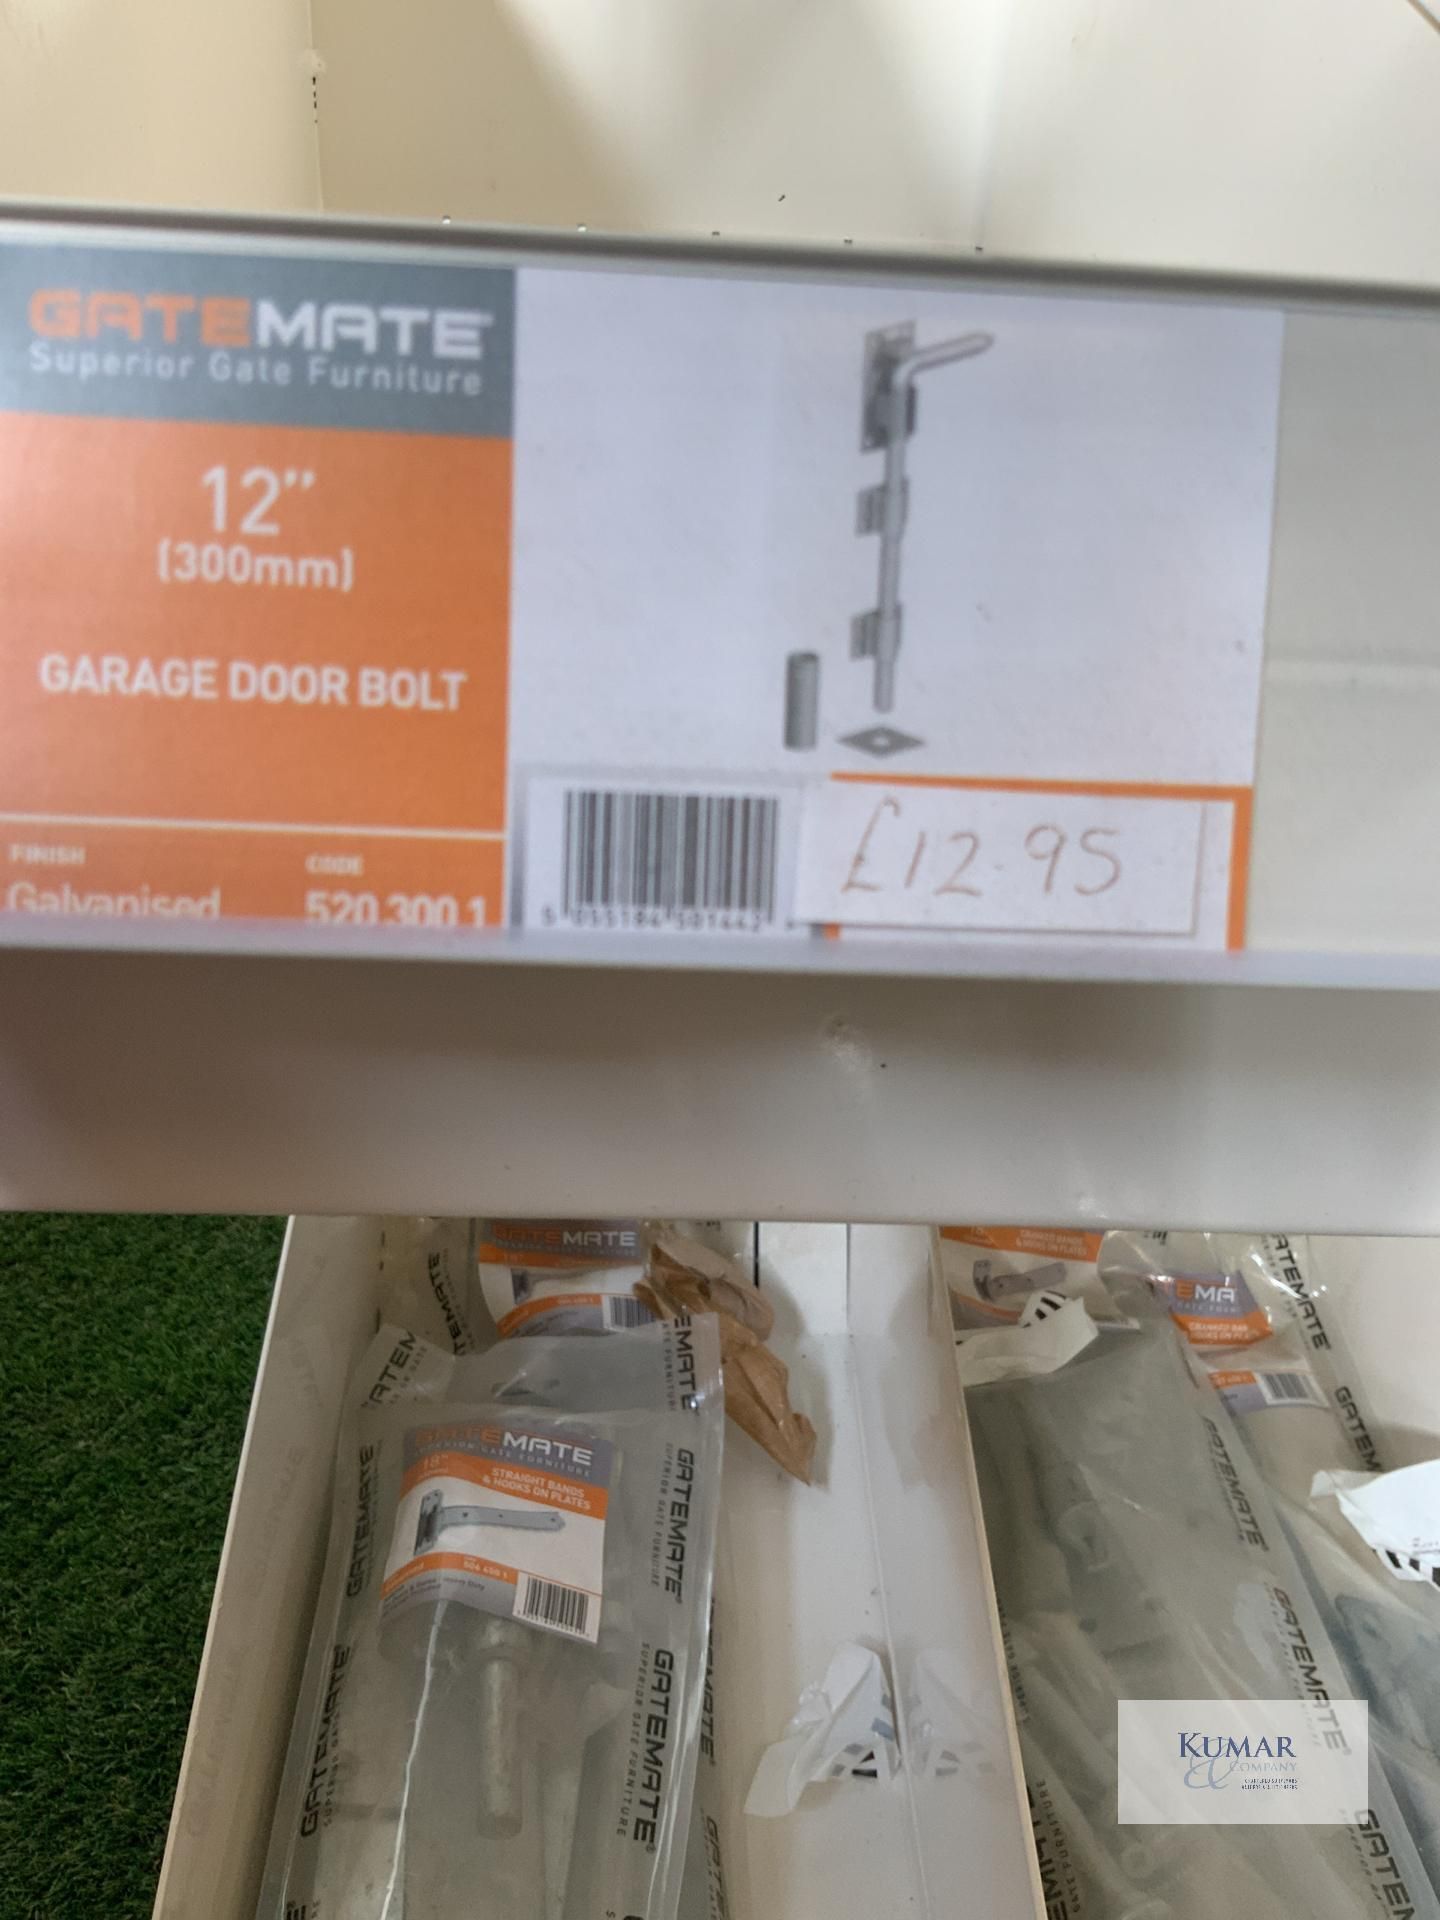 4: Gatemate Garage Door Bolt Sets - Image 4 of 4